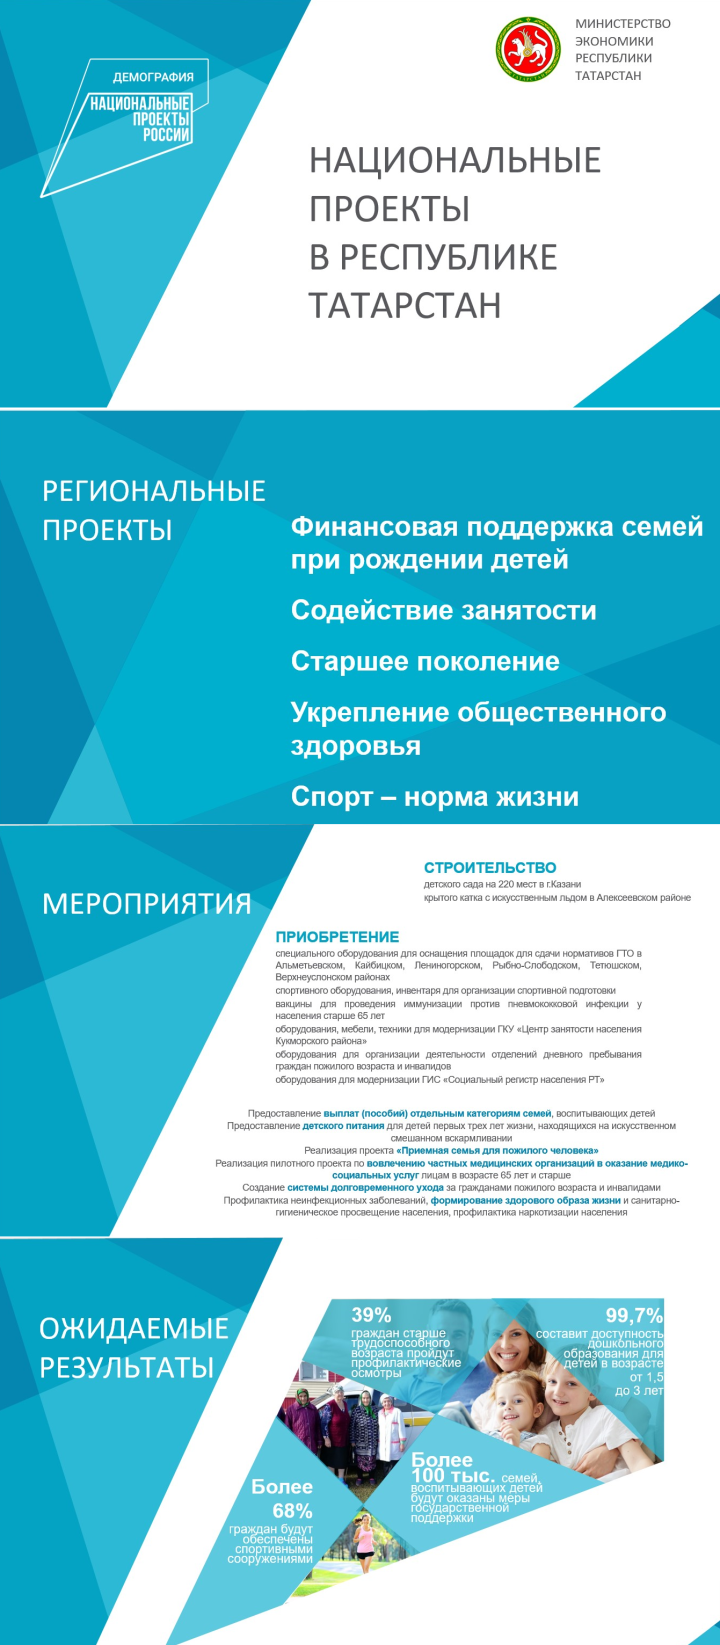 В Татарстане 6,5 млрд рублей направят на реализацию нацпроекта «Демография»